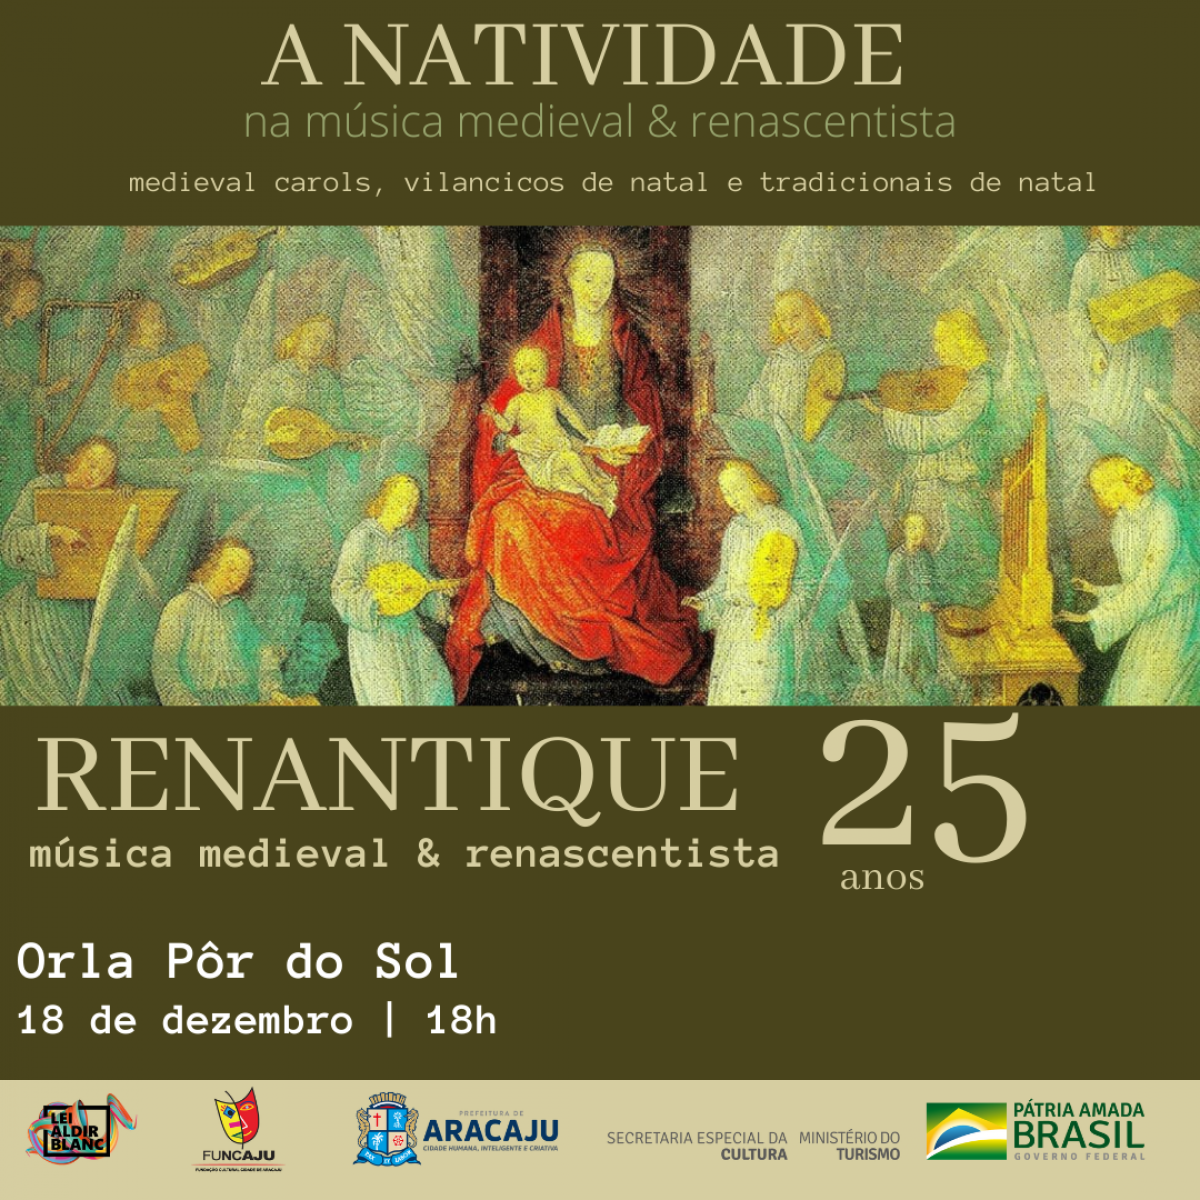 Conjunto de Música Antiga Renantique realiza apresentação natalina na Orla Pôr do Sol (Imagem: Divulgação)